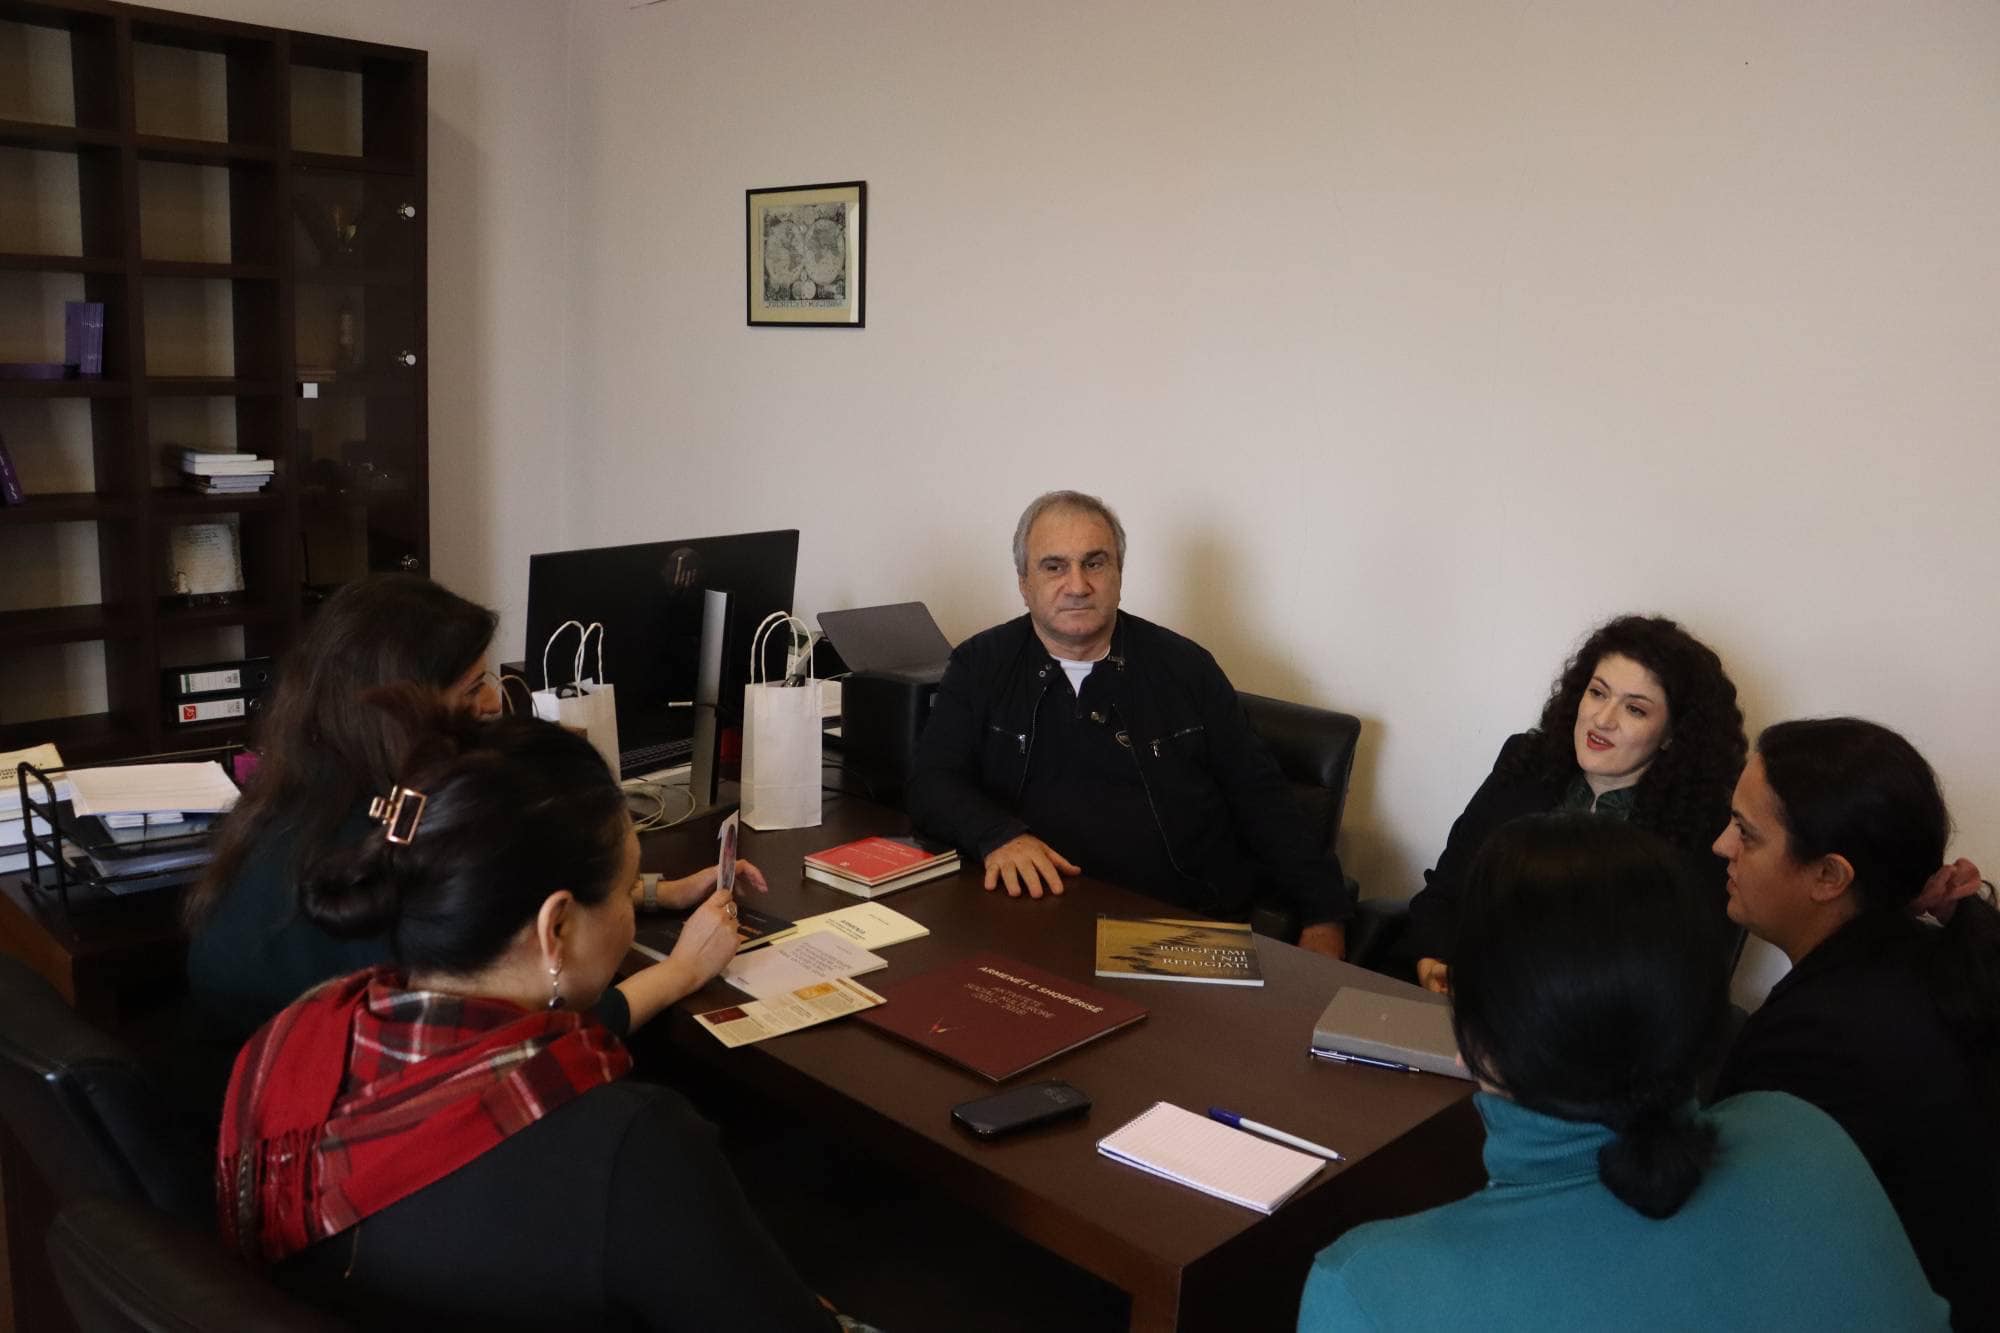 Հայոց ցեղասպանության թանգարան-ինստիտուտի գիտական ֆոնդերն ու գրադարանը համալրվում են